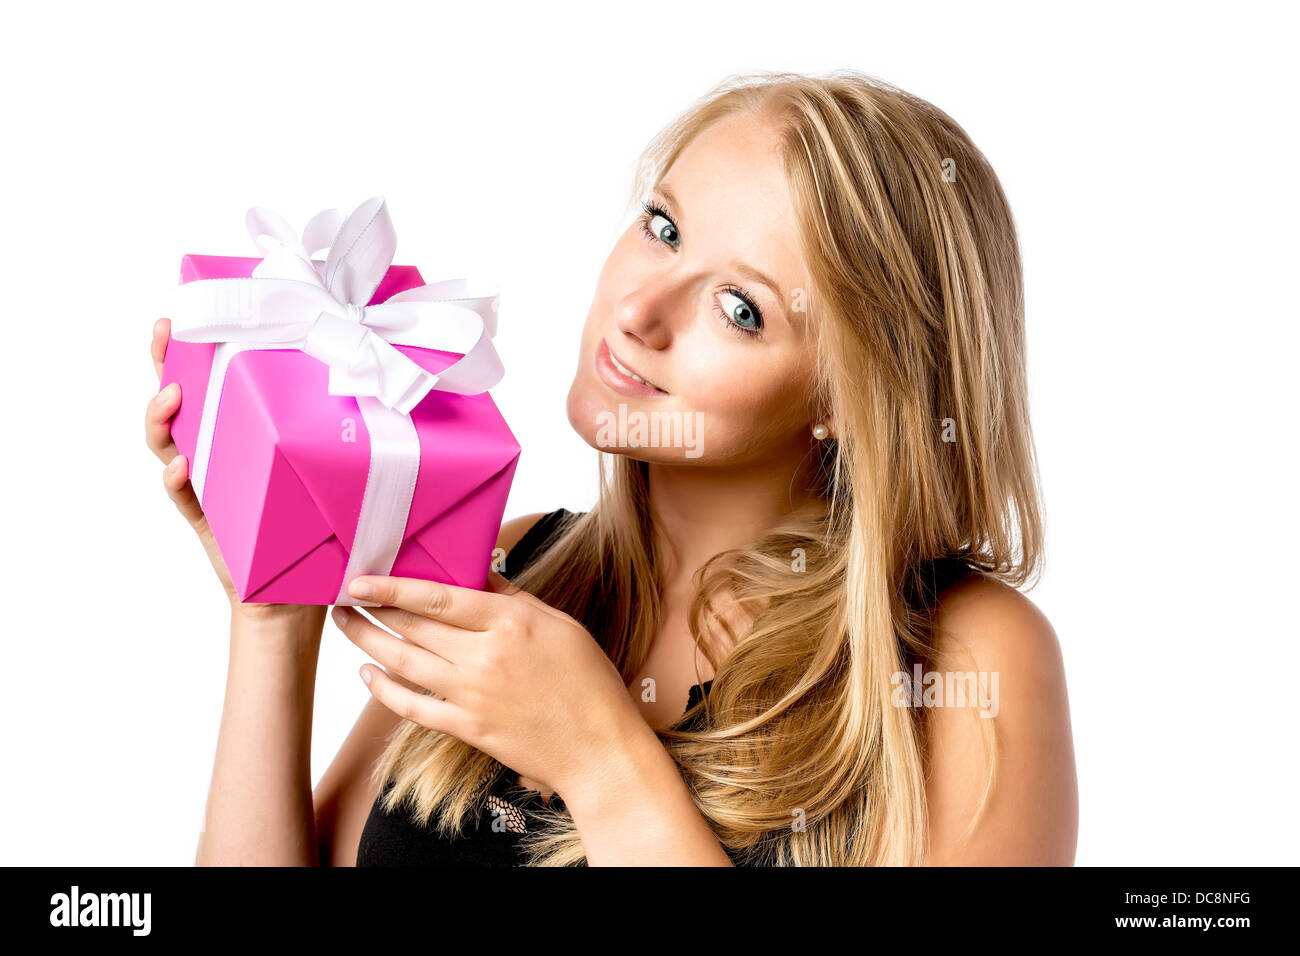 Hübsche blondes Mädchen mit blauen Augen hat eine Geburtstags- oder Weihnachtsgeschenk Stockfoto